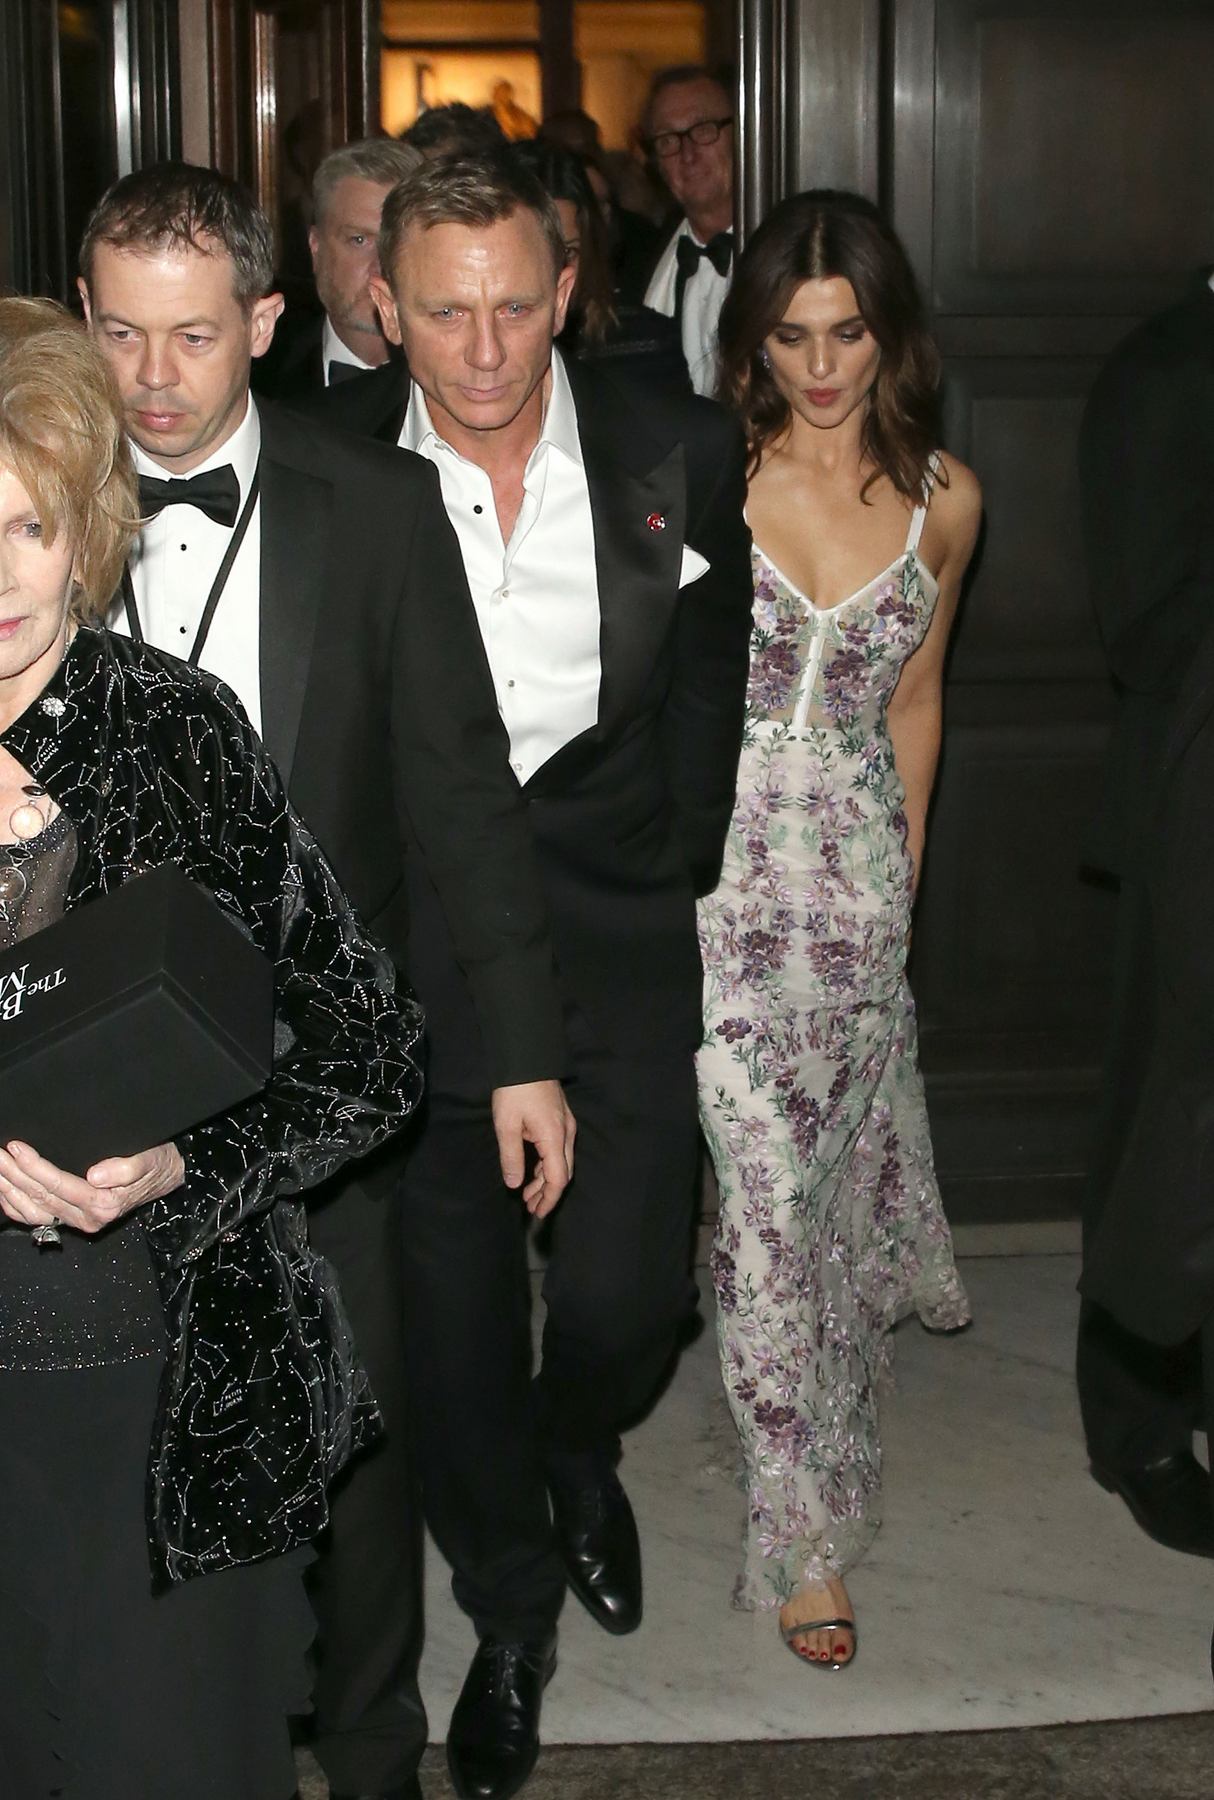 Rachel Weisz and Daniel Craig Arrives at Spectre Film Premiere After Party